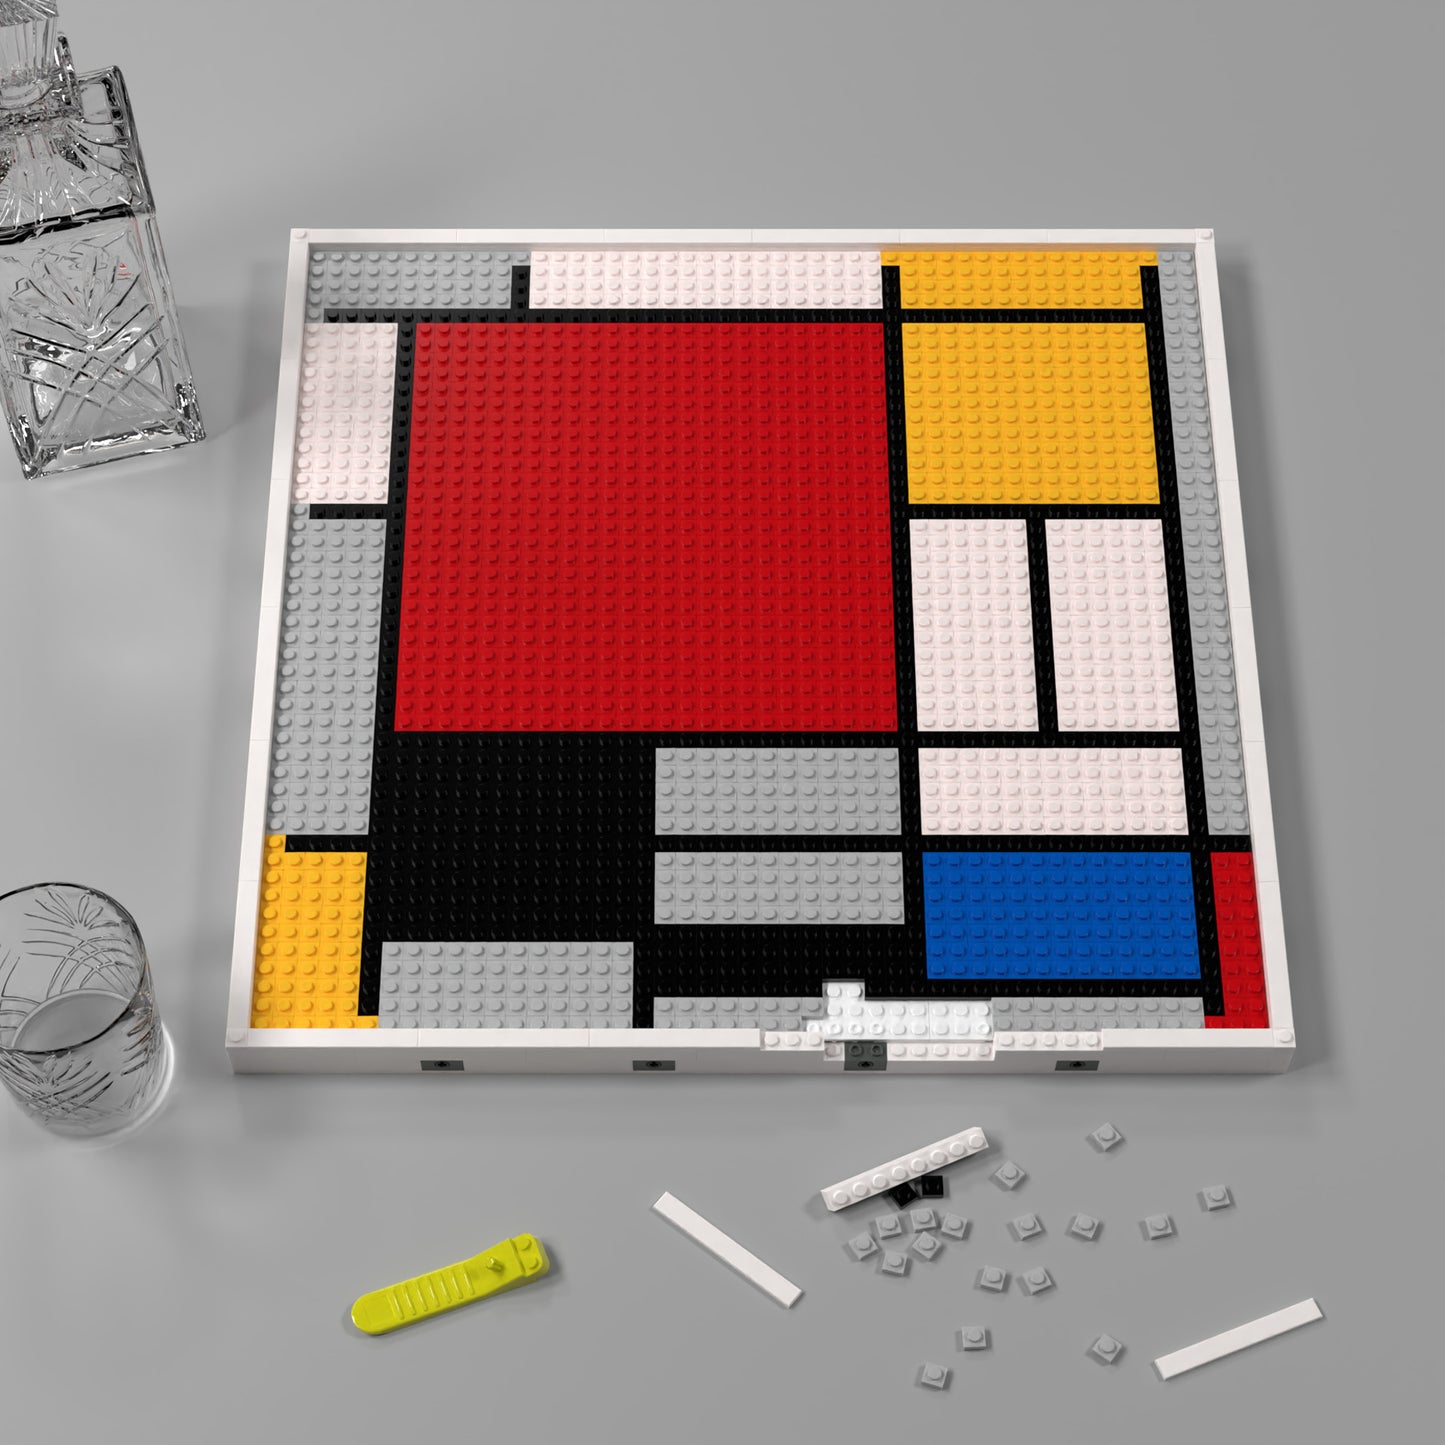 Mondrian Colorful Pixel Art Large Lego-Compatible Building Blocks DIY Jigsaw Puzzle